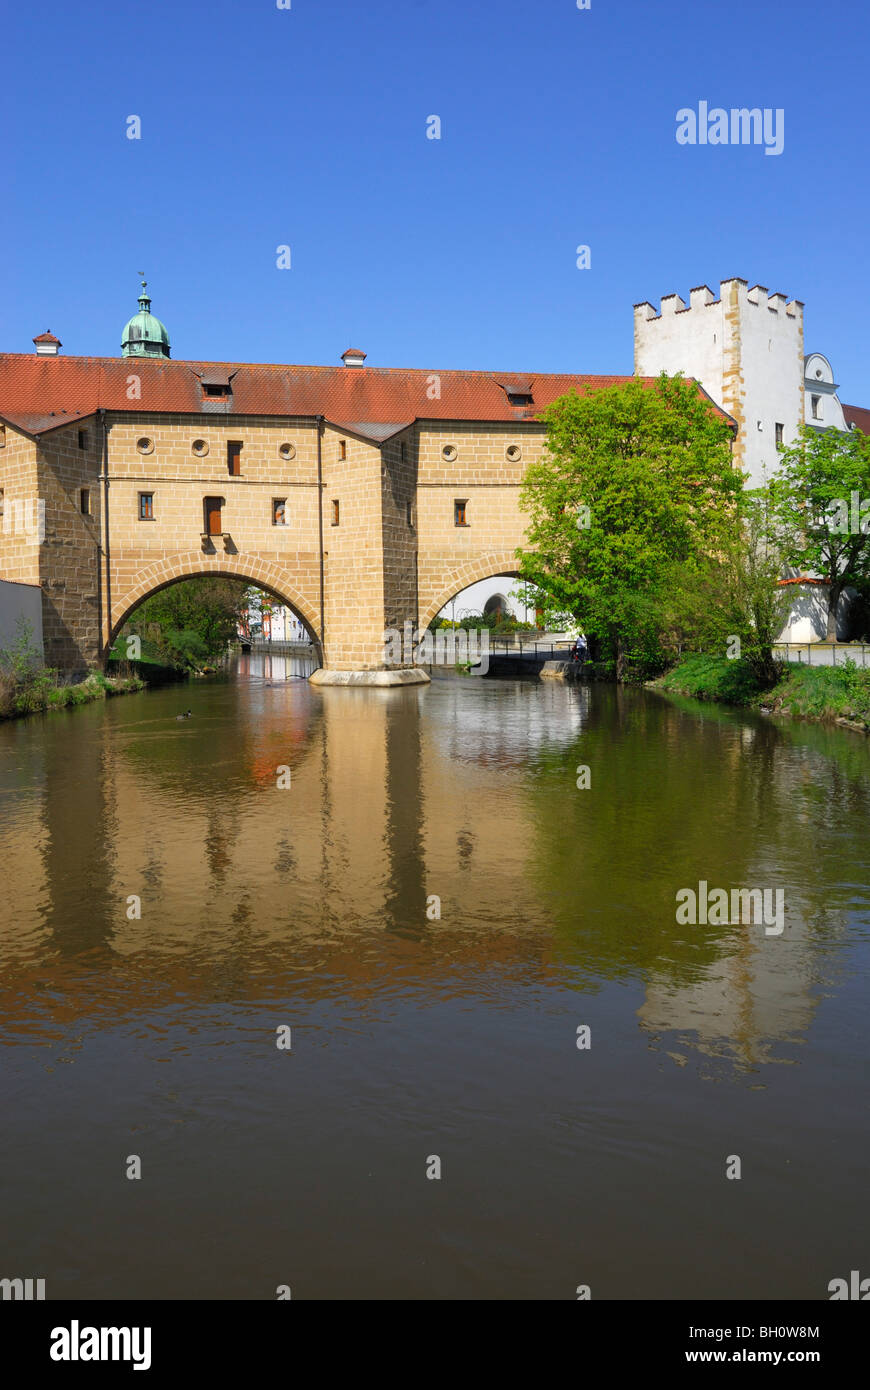 Stadtbrille (città fortificazione) oltre il fiume Vils, Amberg, Alto Palatinato, Baviera, Germania Foto Stock